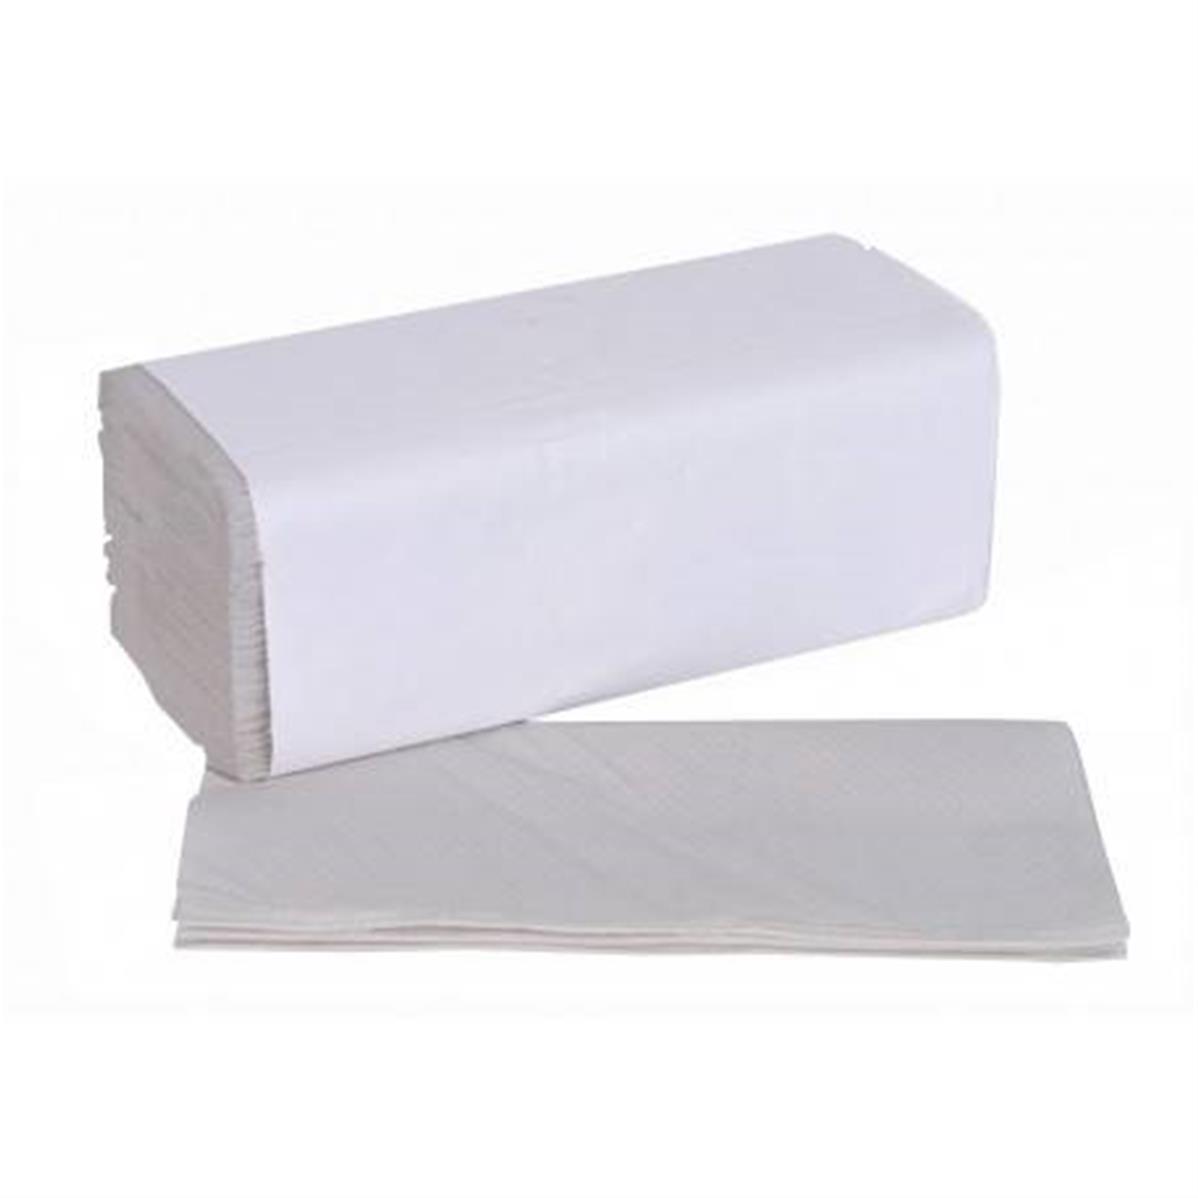 Essuie-mains en pure ouate blanc plié en V 2 plis (21 x 22 cm) 